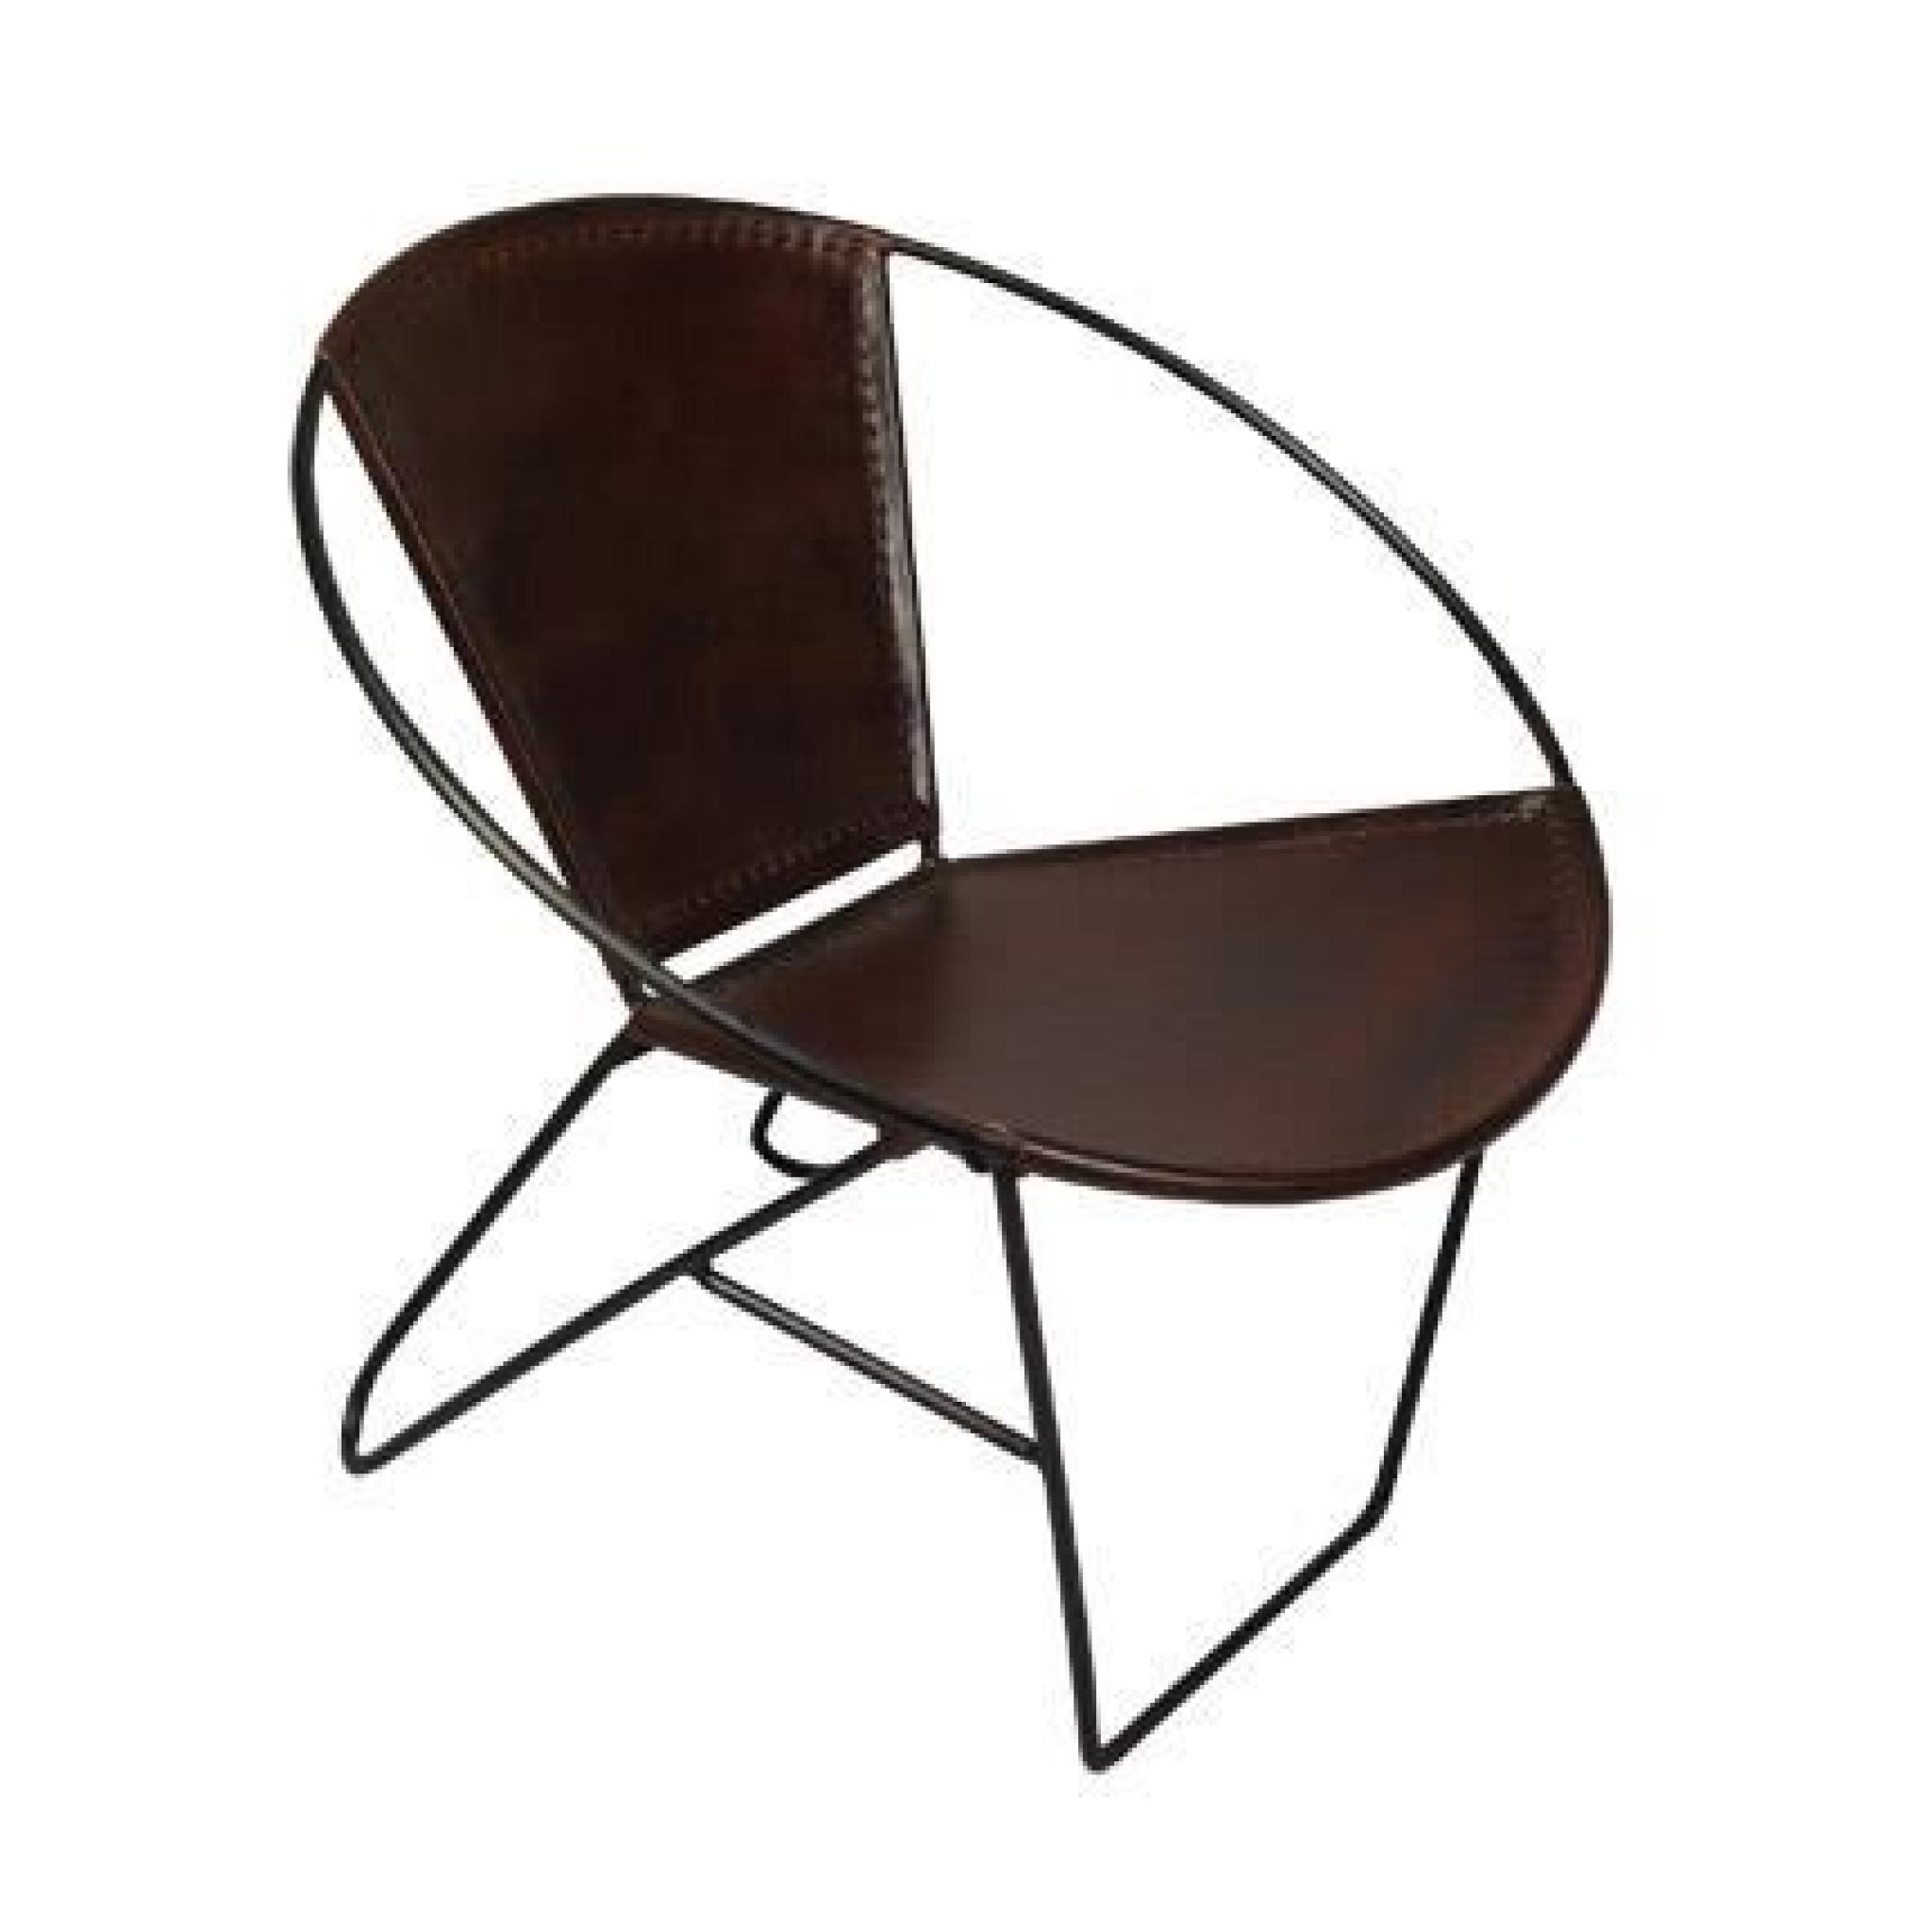 Chaise ronde en fer et cuir design - coloris marron